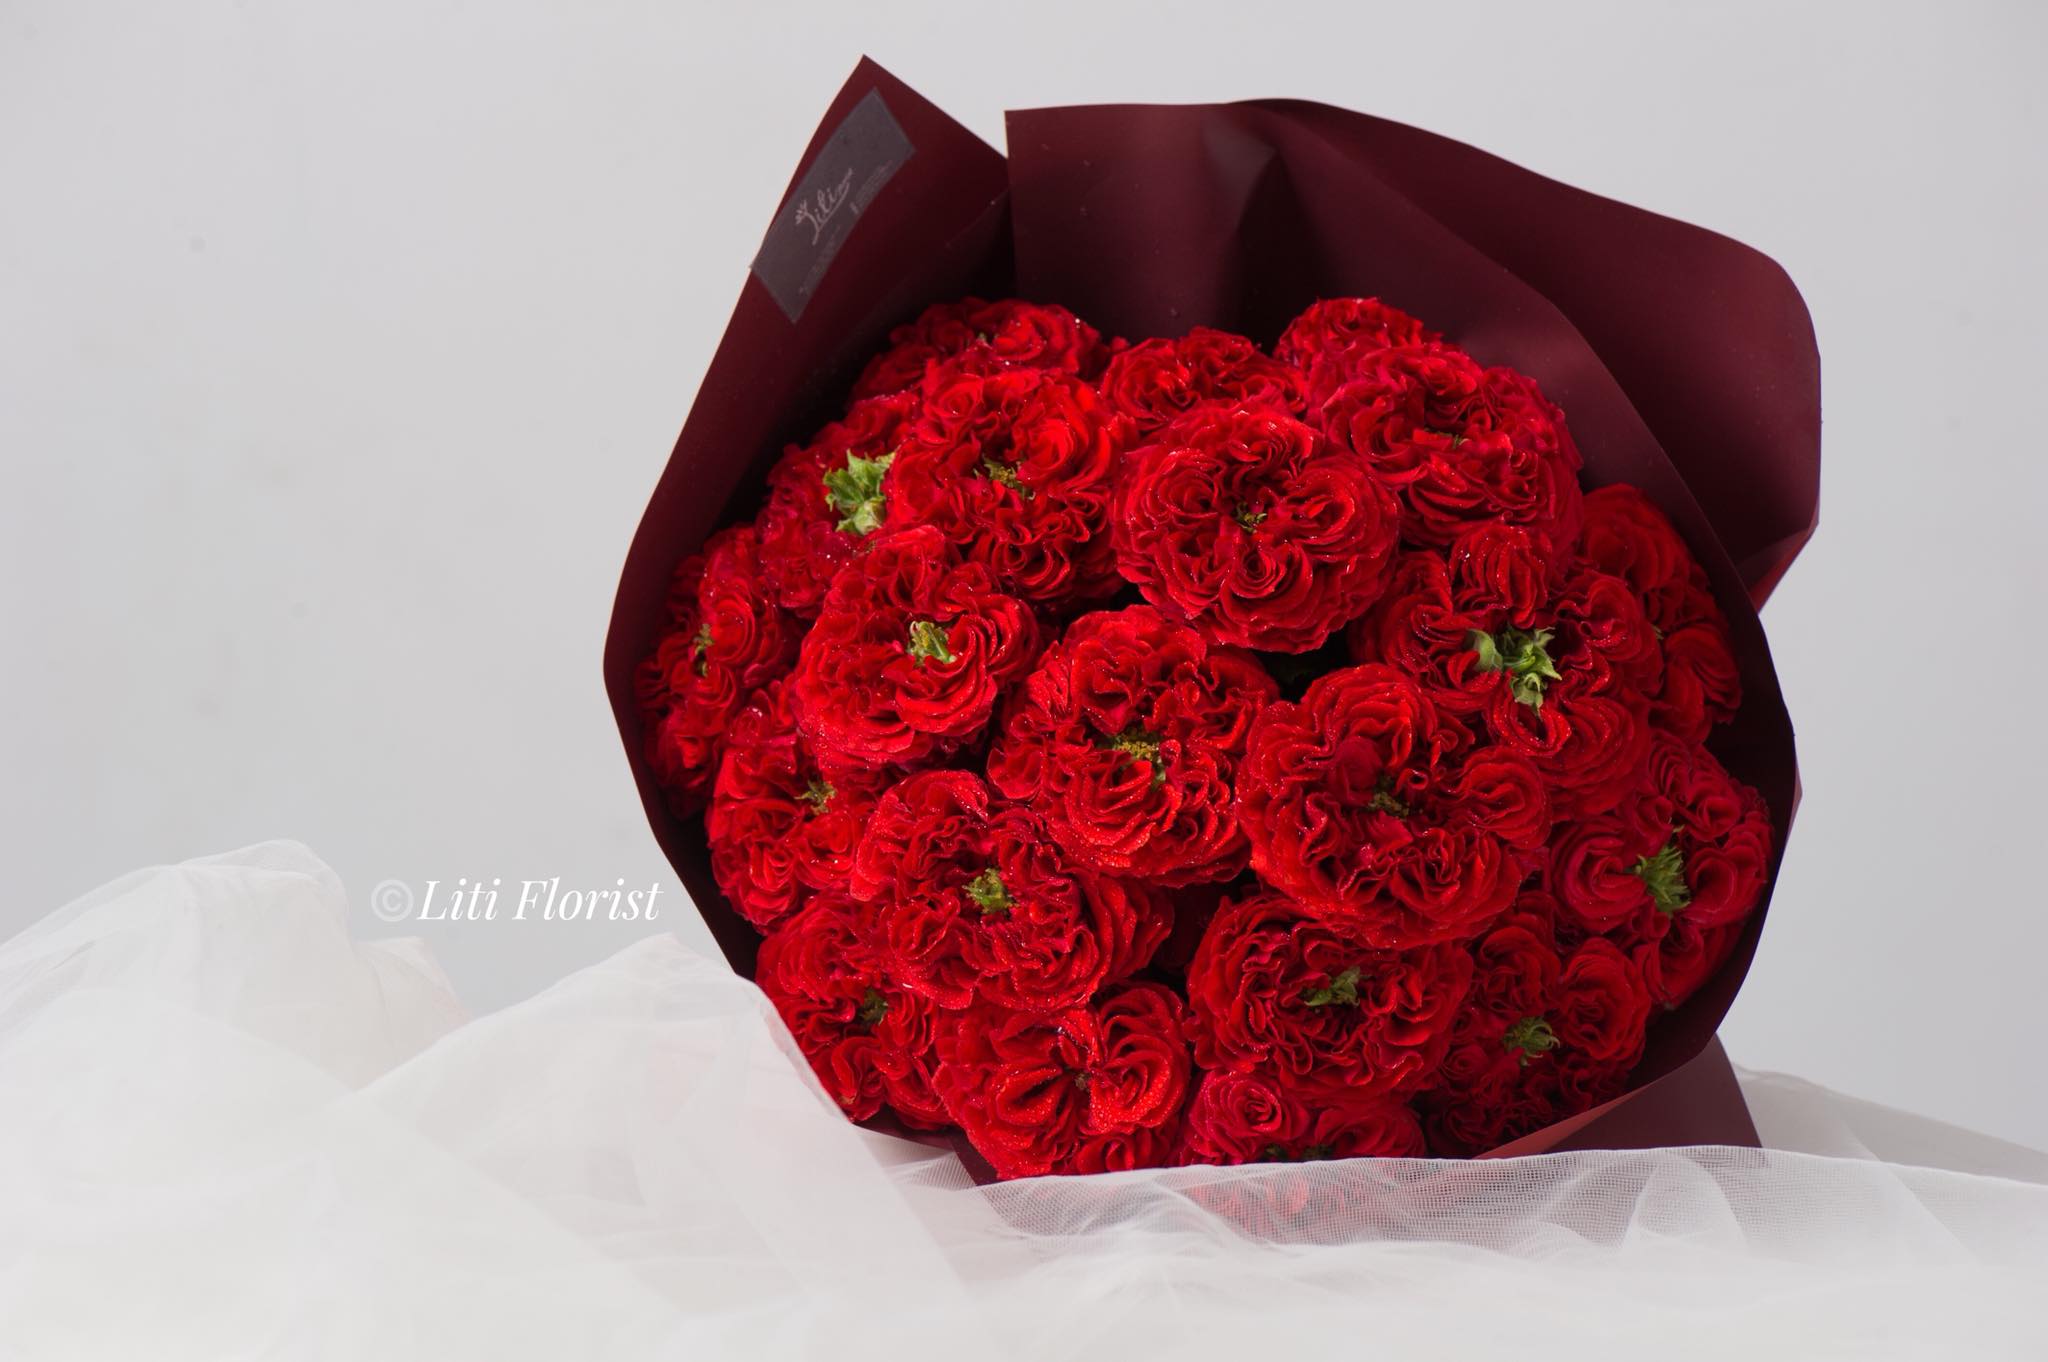 Số lượng hoa hồng không quan trọng bằng ý nghĩa của chúng. Tặng hoa hồng là khẩu hiệu cho tình yêu và tình bạn, mang đến cho người nhận một cảm giác ấm áp và hạnh phúc không thể tả.